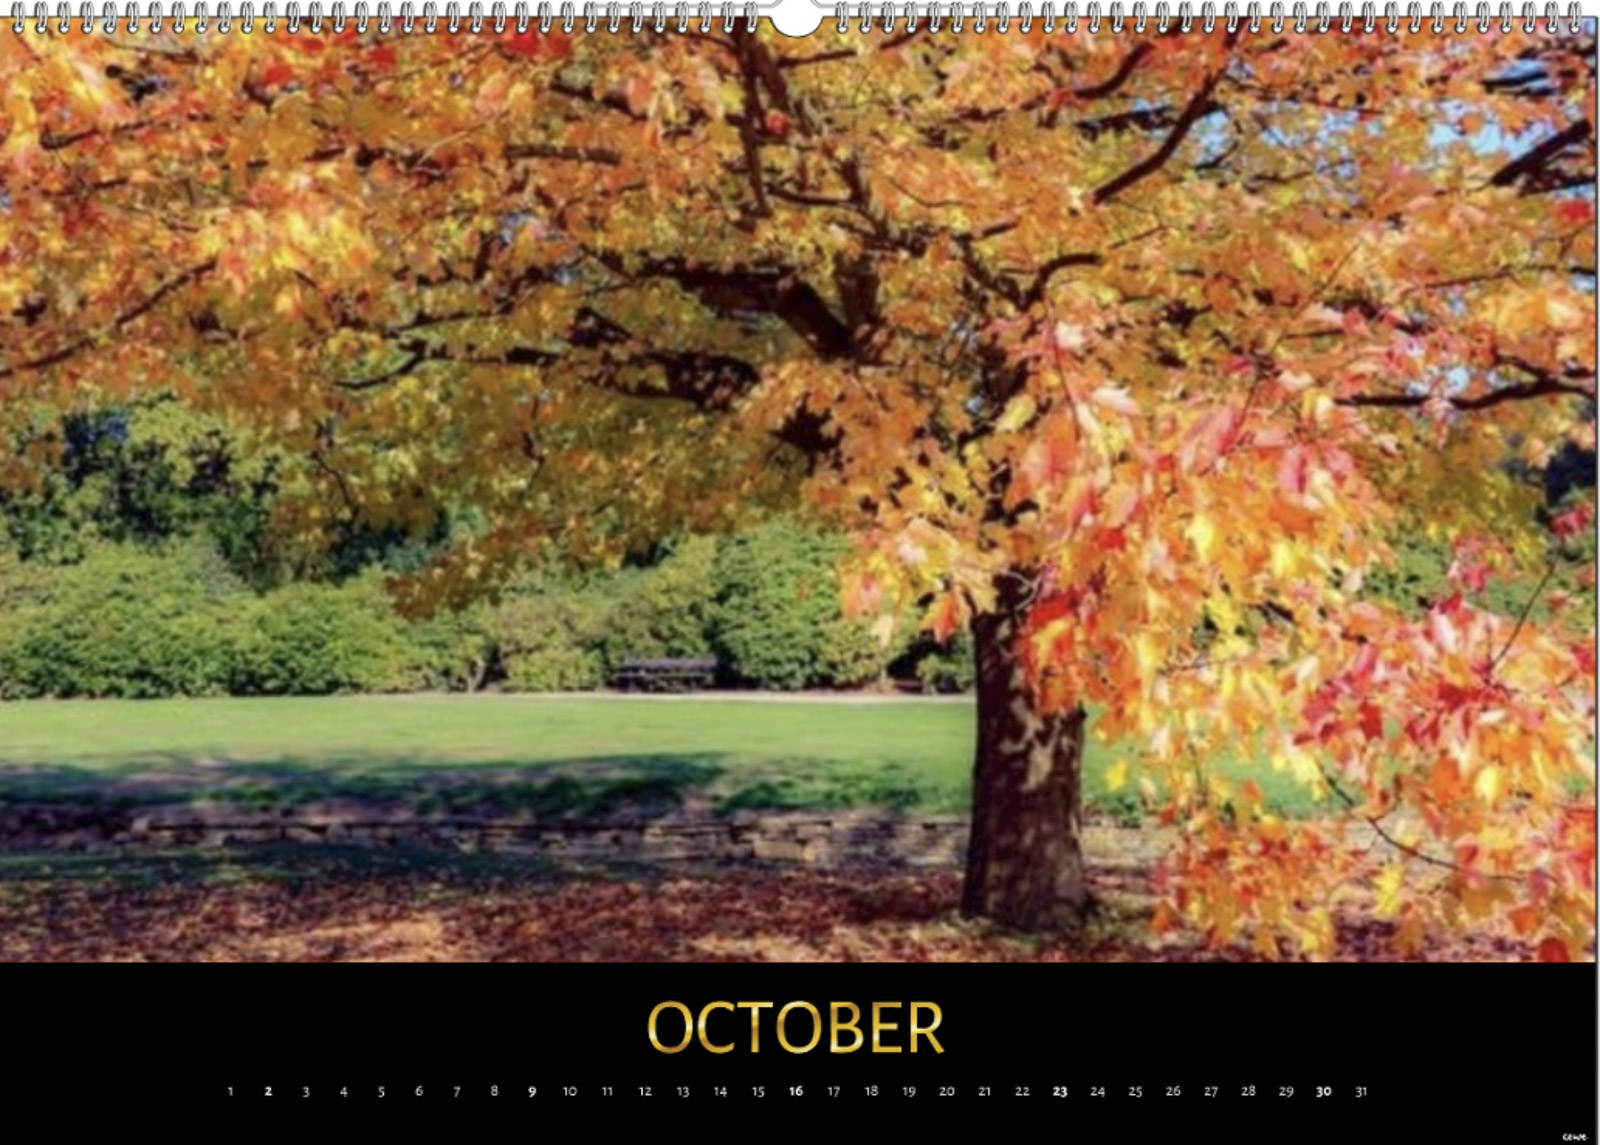 October, Cath Ruane